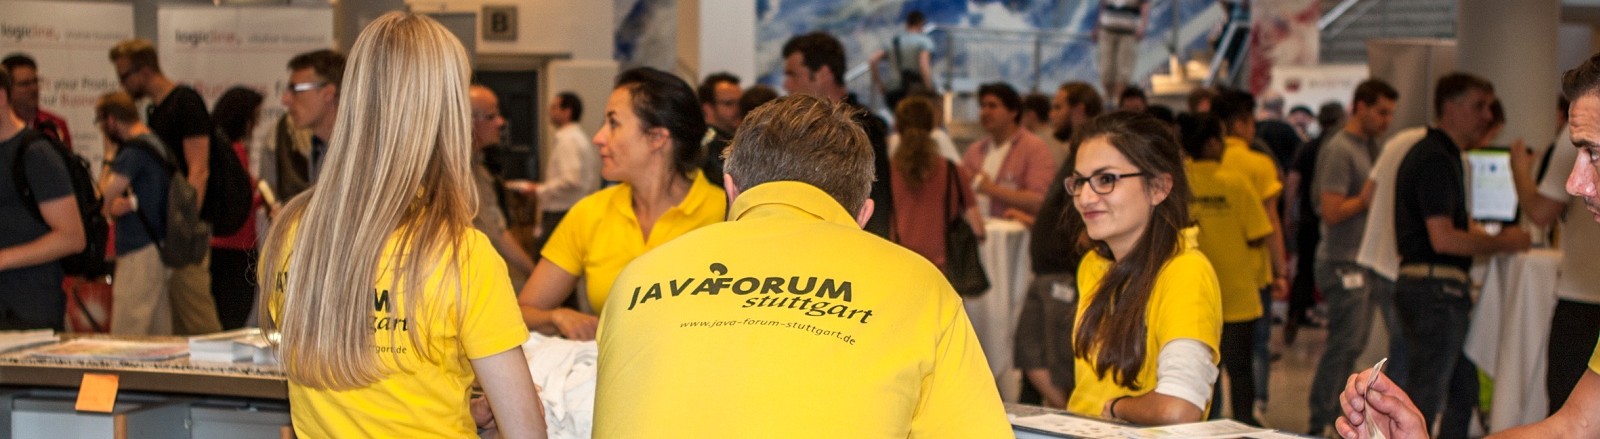 Java Forum Stuttgart 2016